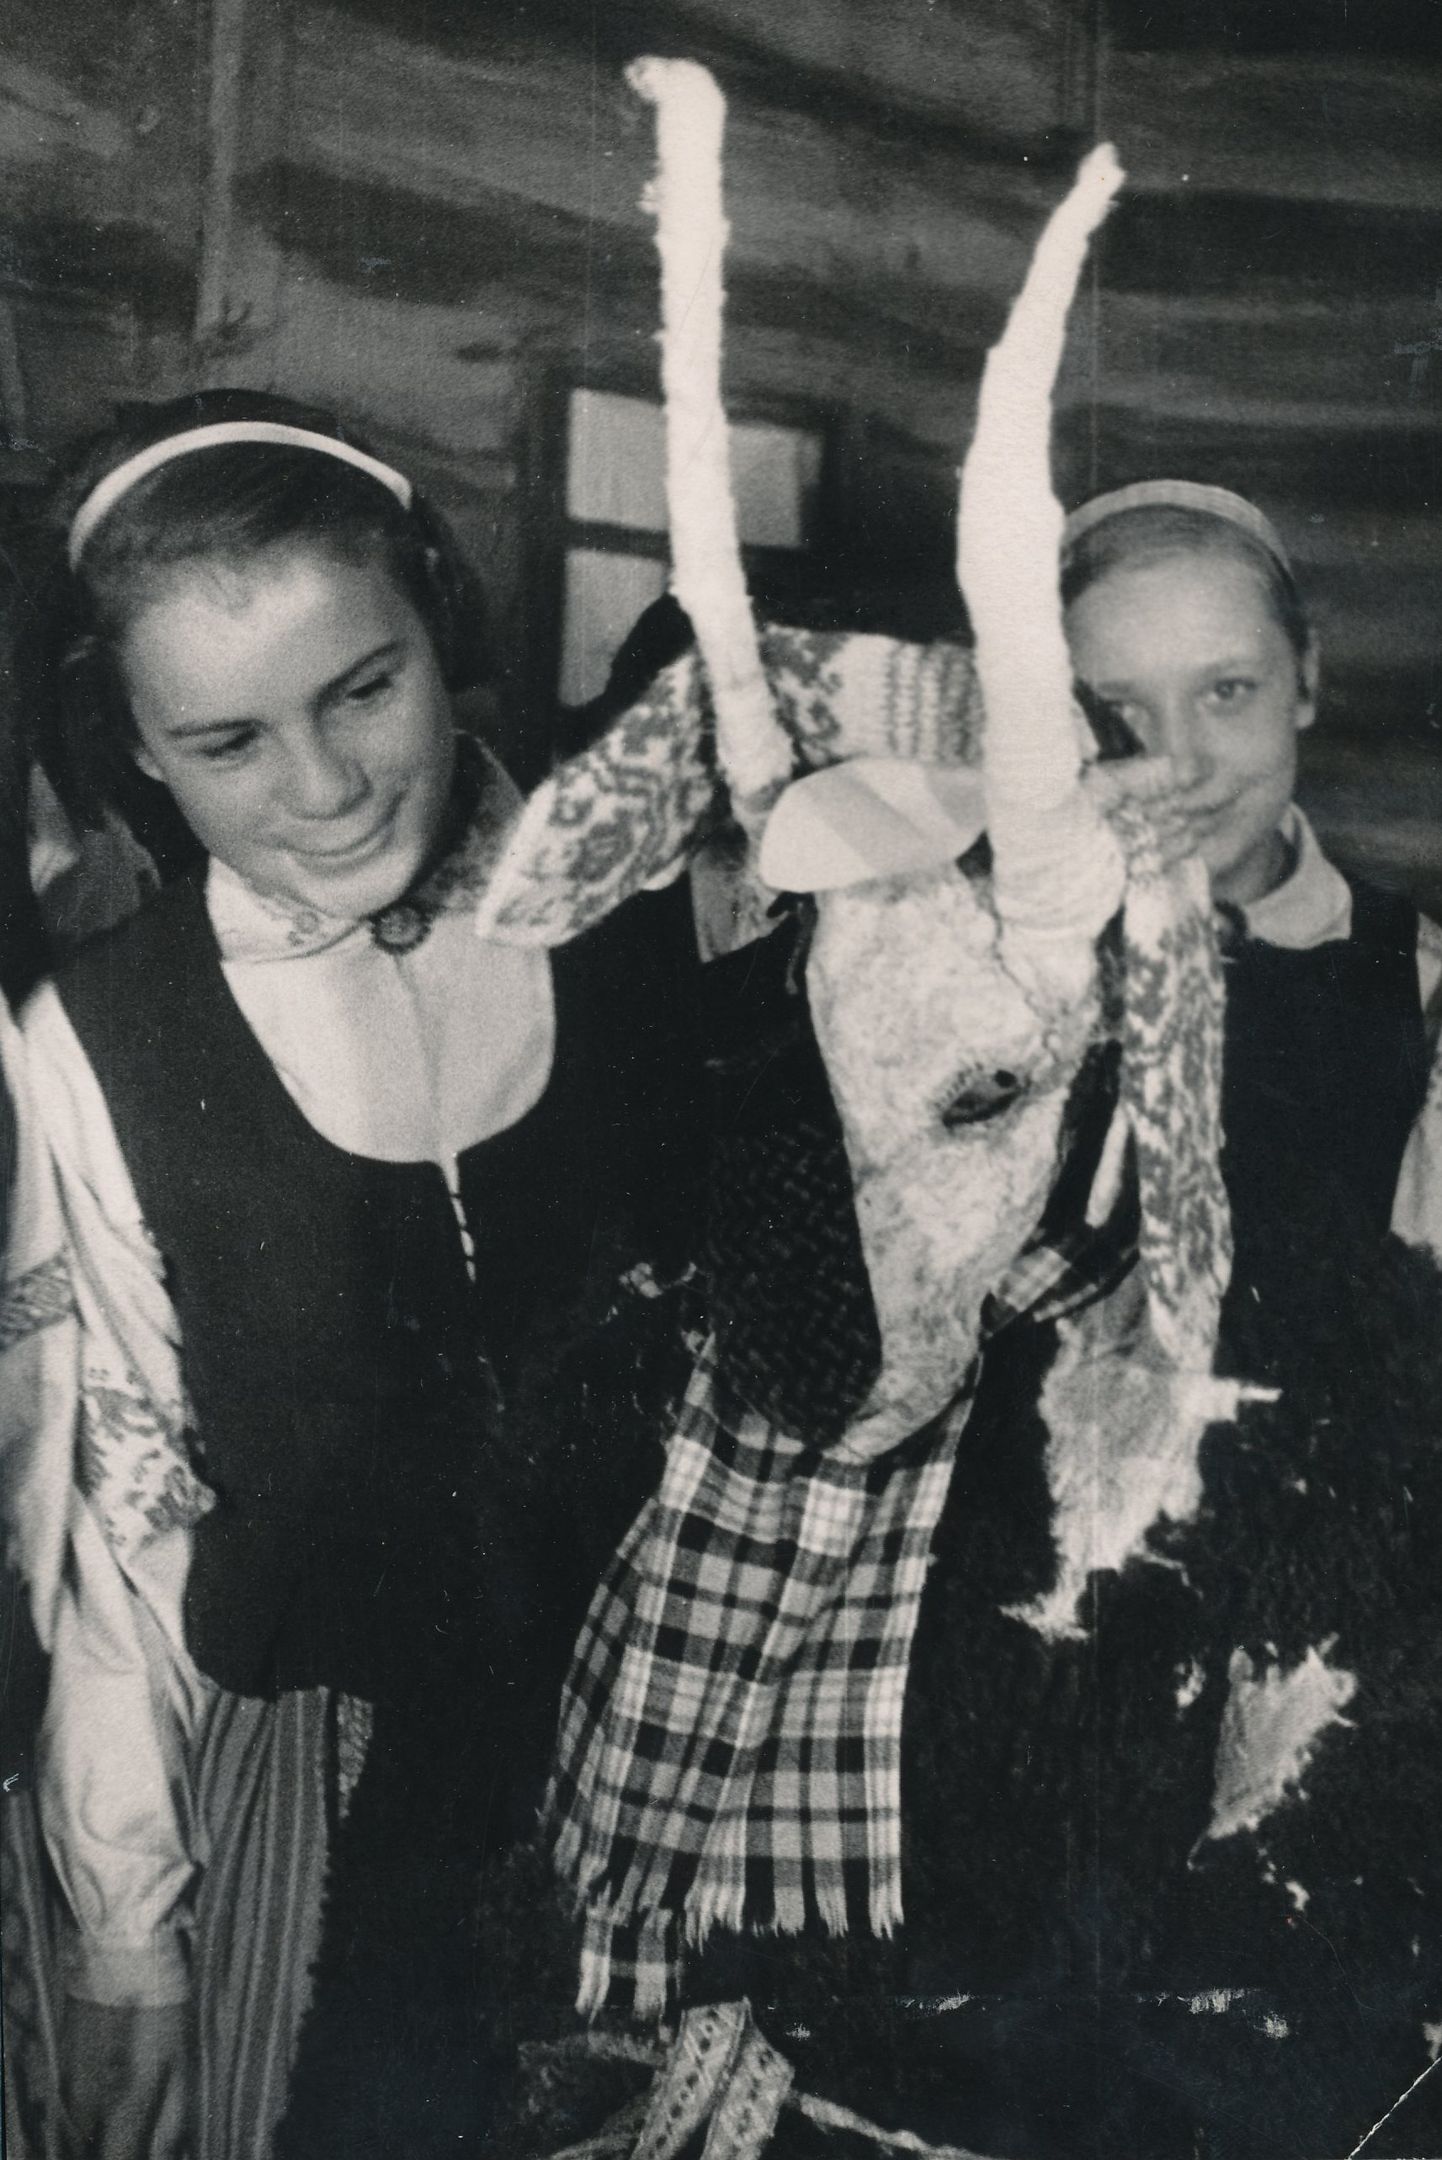 Möödunud sajandi keskpaigas jõule ametlikult enam polnud. Pilt on tehtud 1950.–1960. aastatel Võru 3. seitsmeklassilise kooli kodulooringis, kus tutvustati näärikombeid, konkreetselt näärisokku.